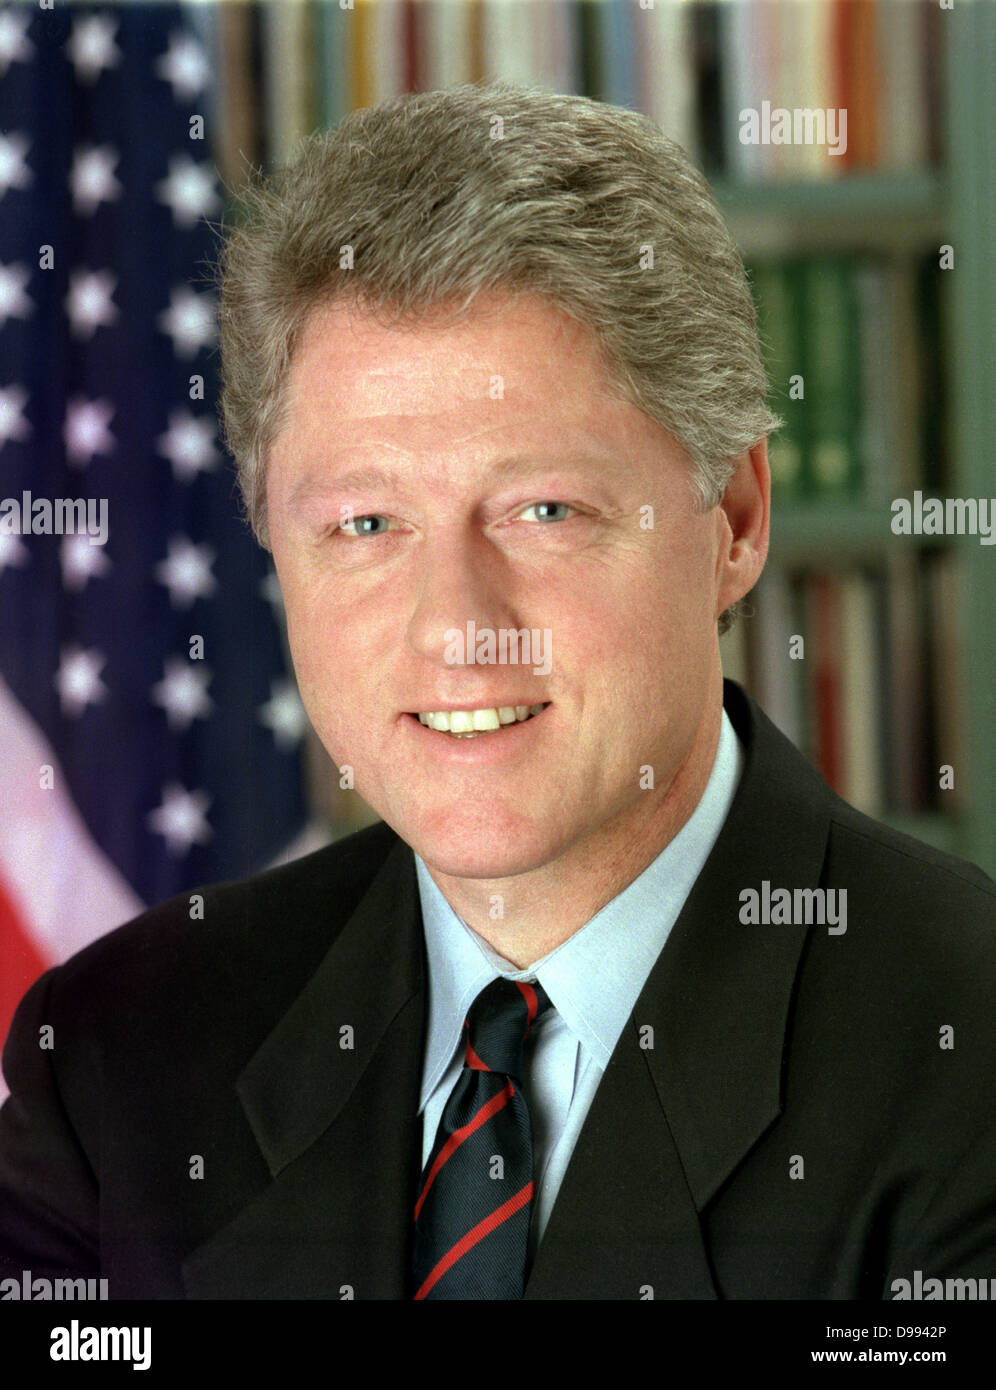 William Jefferson Clinton (nacido en 1946) 42º Presidente de los Estados Unidos de 1993-2001. Cabeza y hombros retrato con estrellas y rayas en el fondo. Candidato demócrata estadounidense Foto de stock